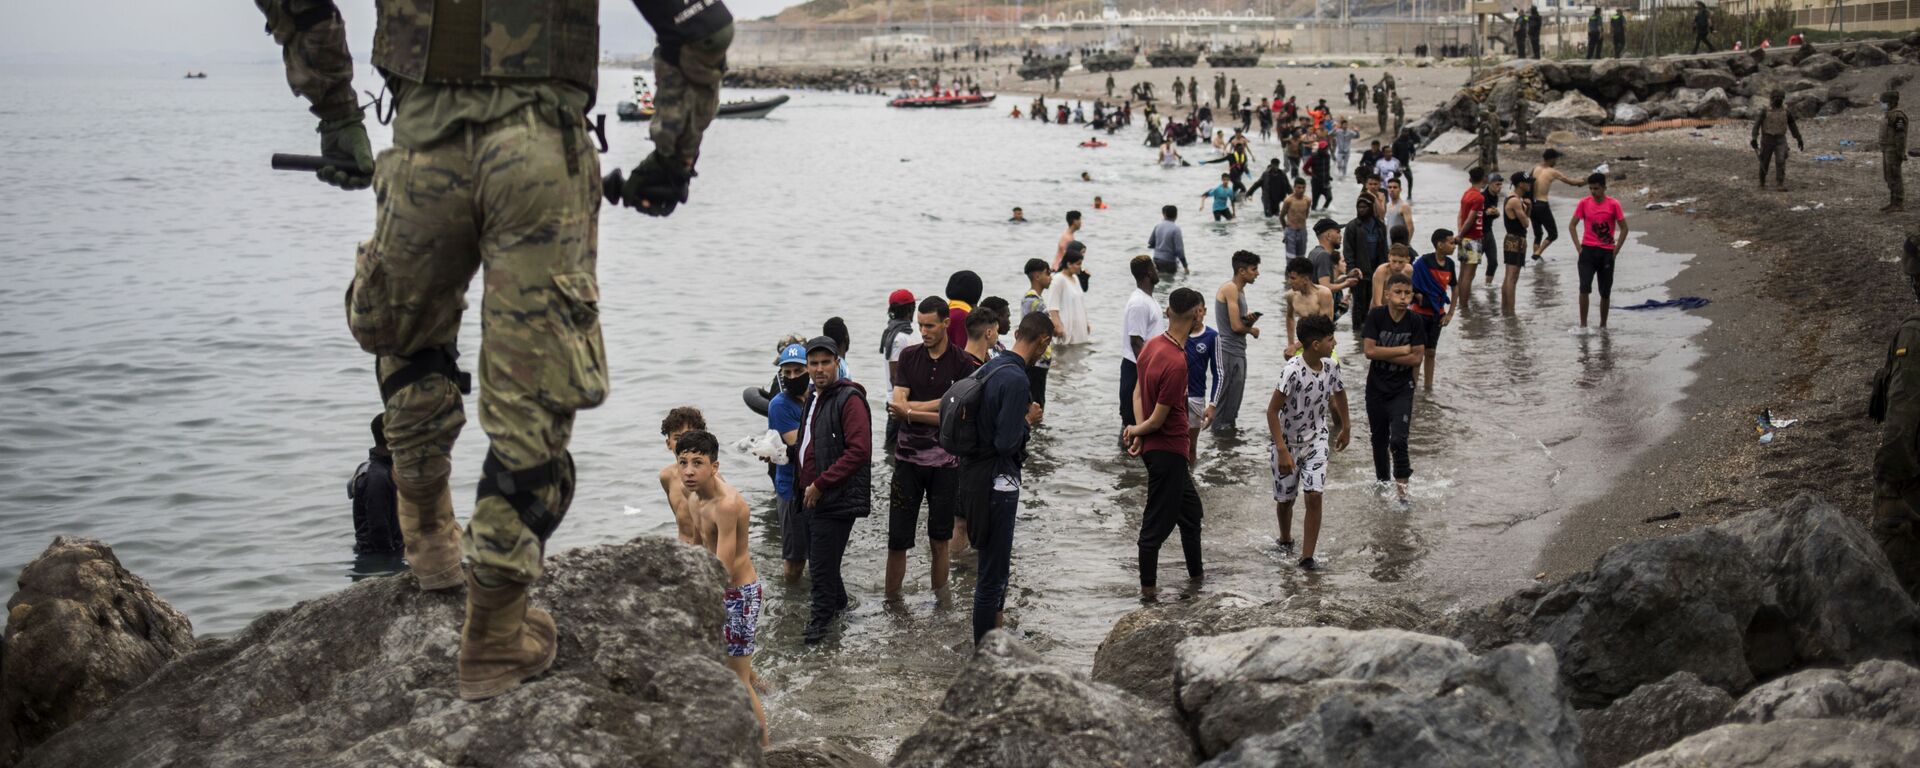 Situation à Ceuta, où des milliers de migrants ont afflué lundi dans l'enclave espagnole depuis le Maroc, le 18 mai 2021 - Sputnik Afrique, 1920, 18.05.2021